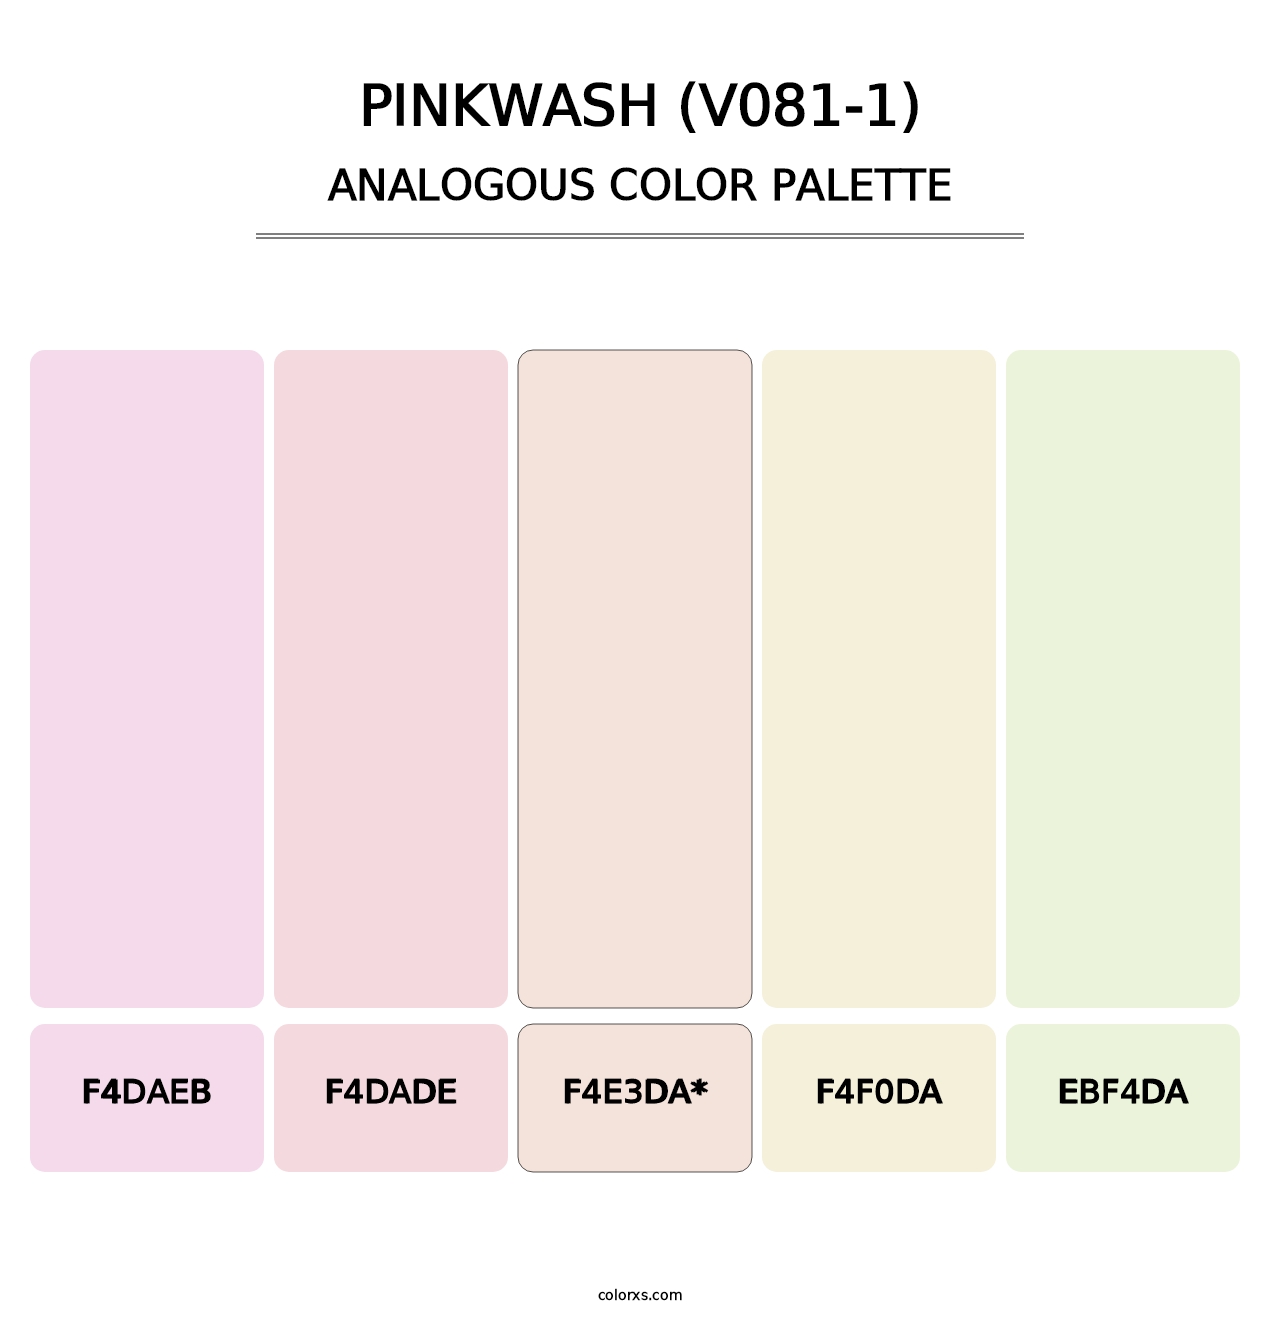 Pinkwash (V081-1) - Analogous Color Palette